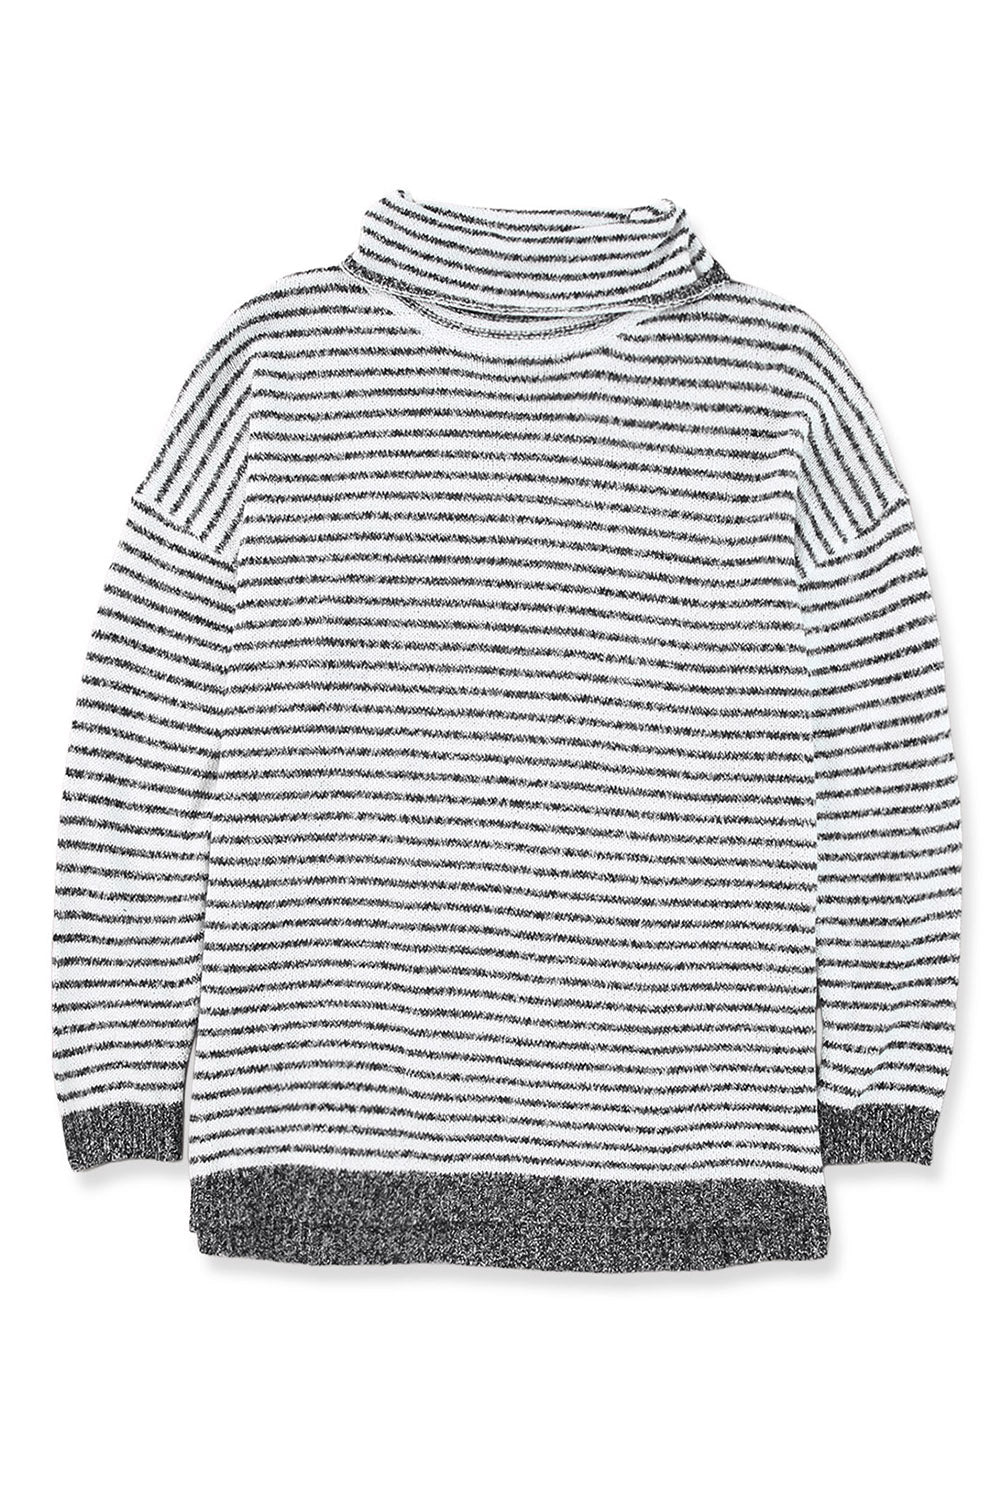 Široki džemper s dolčevitom na pruge kaki boje